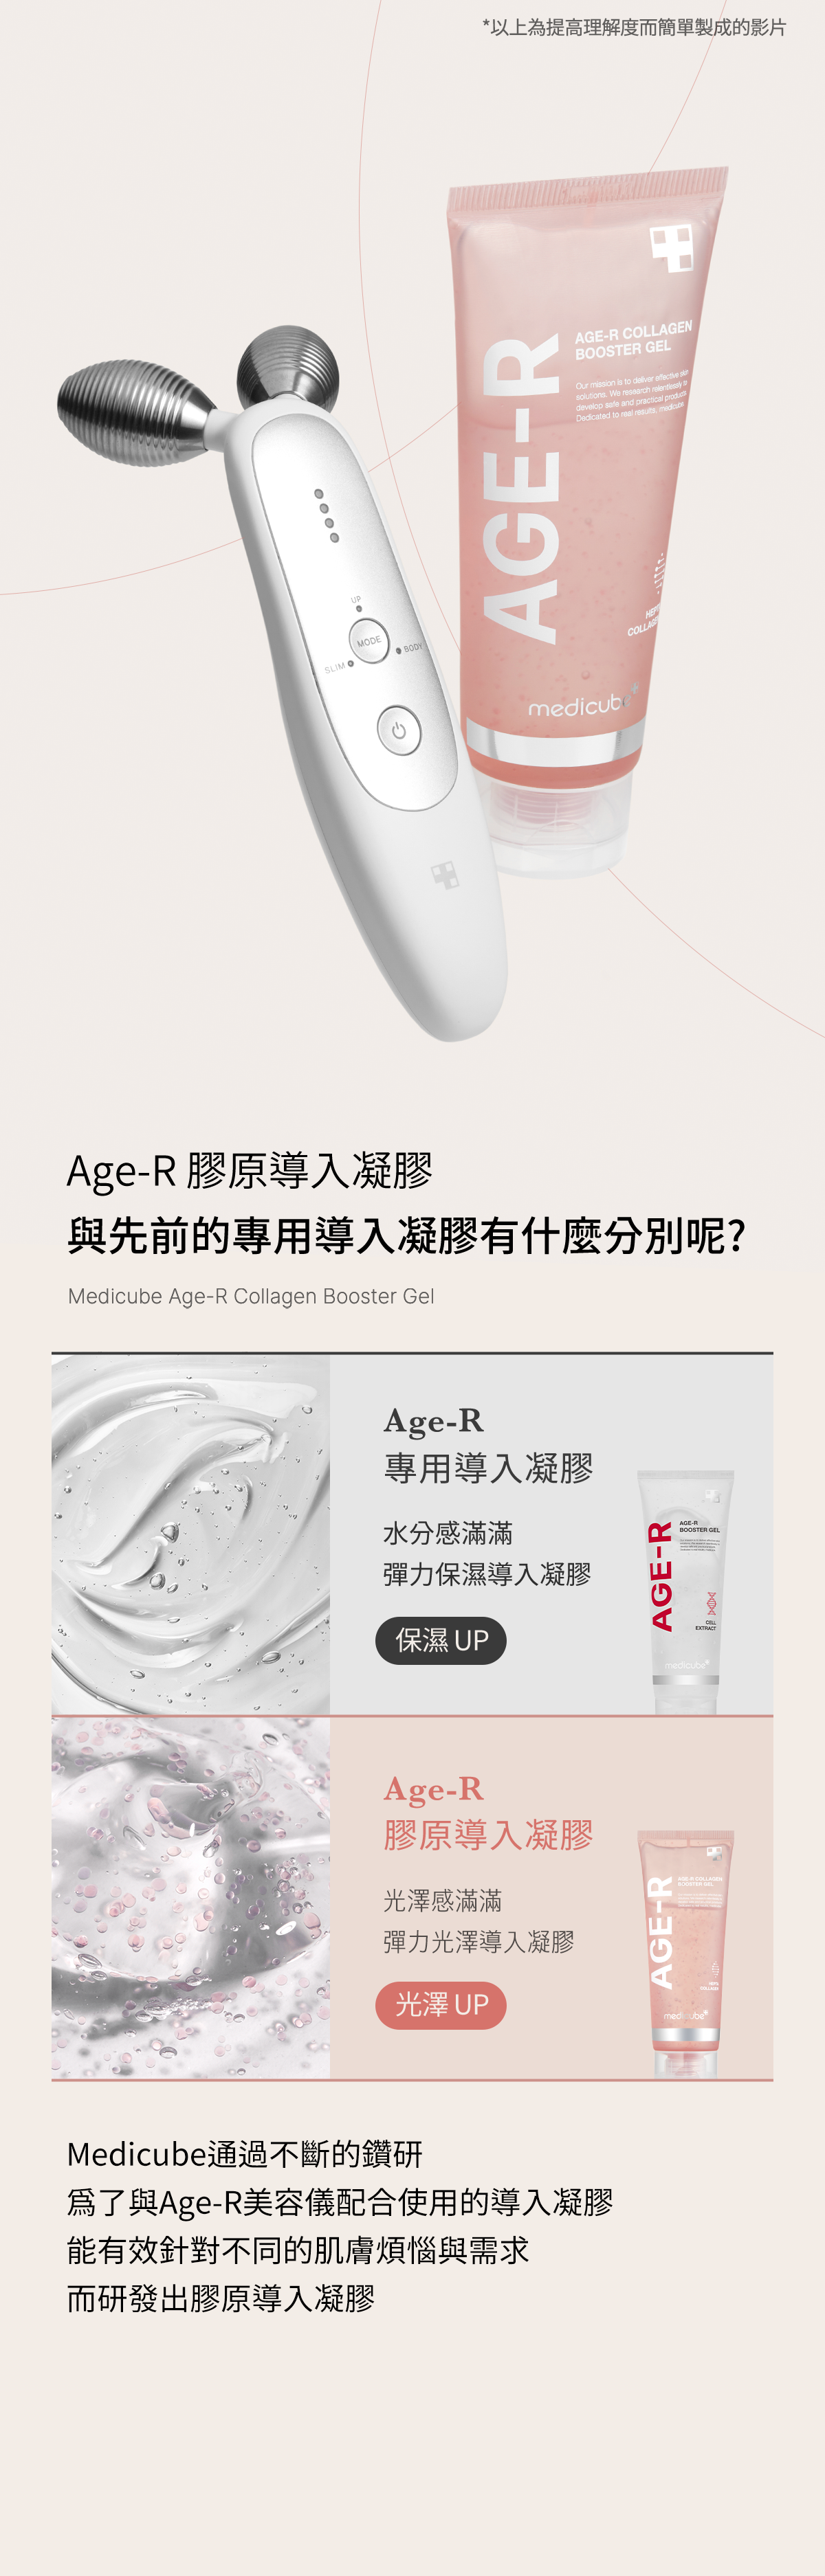 Age-R 膠原導入凝膠